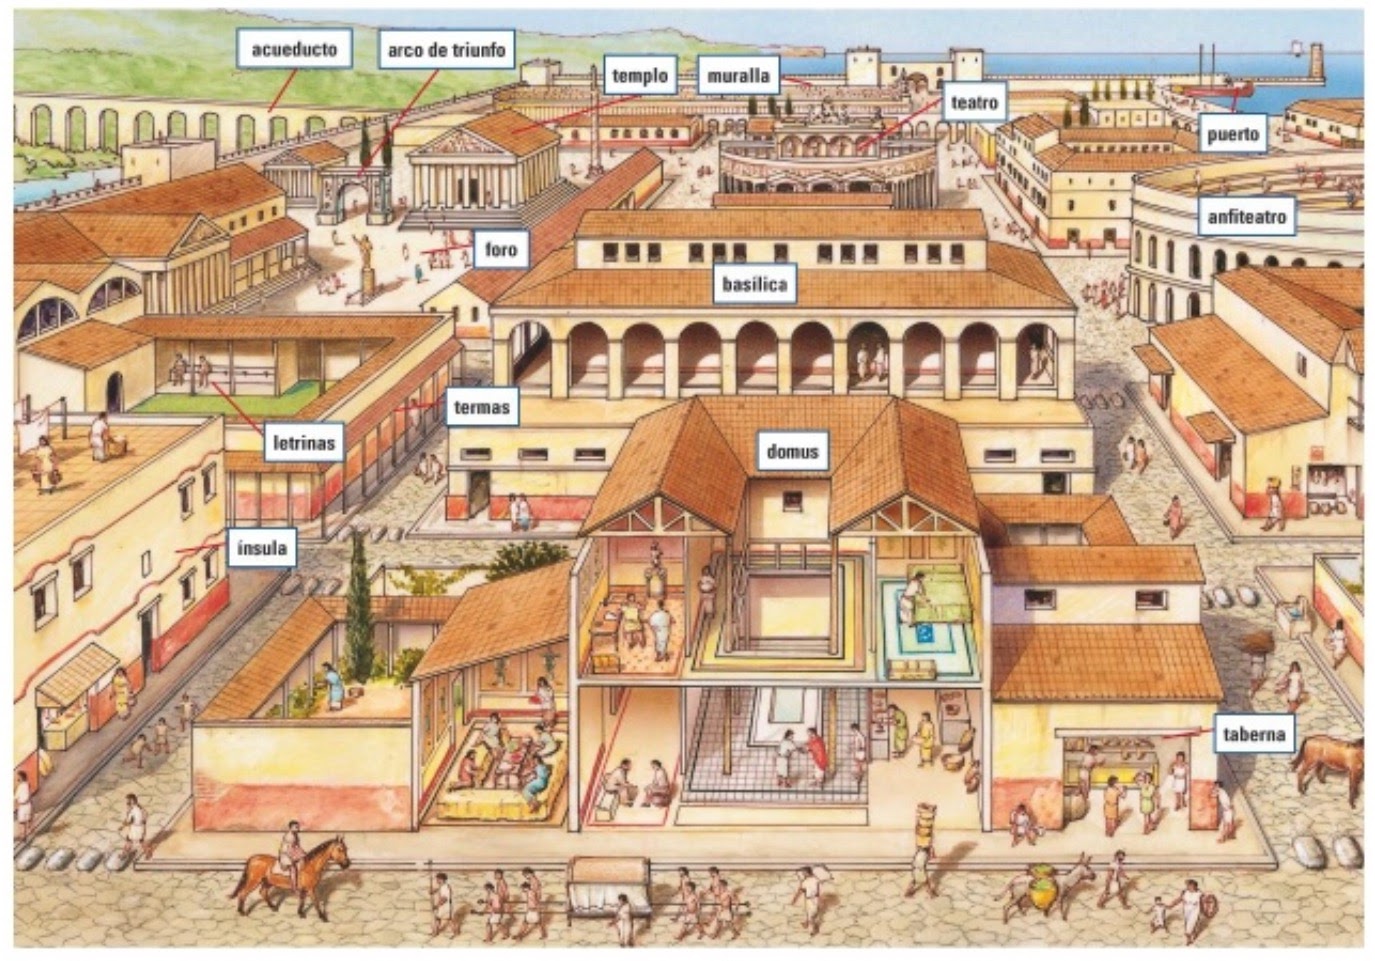 Ciudad romana